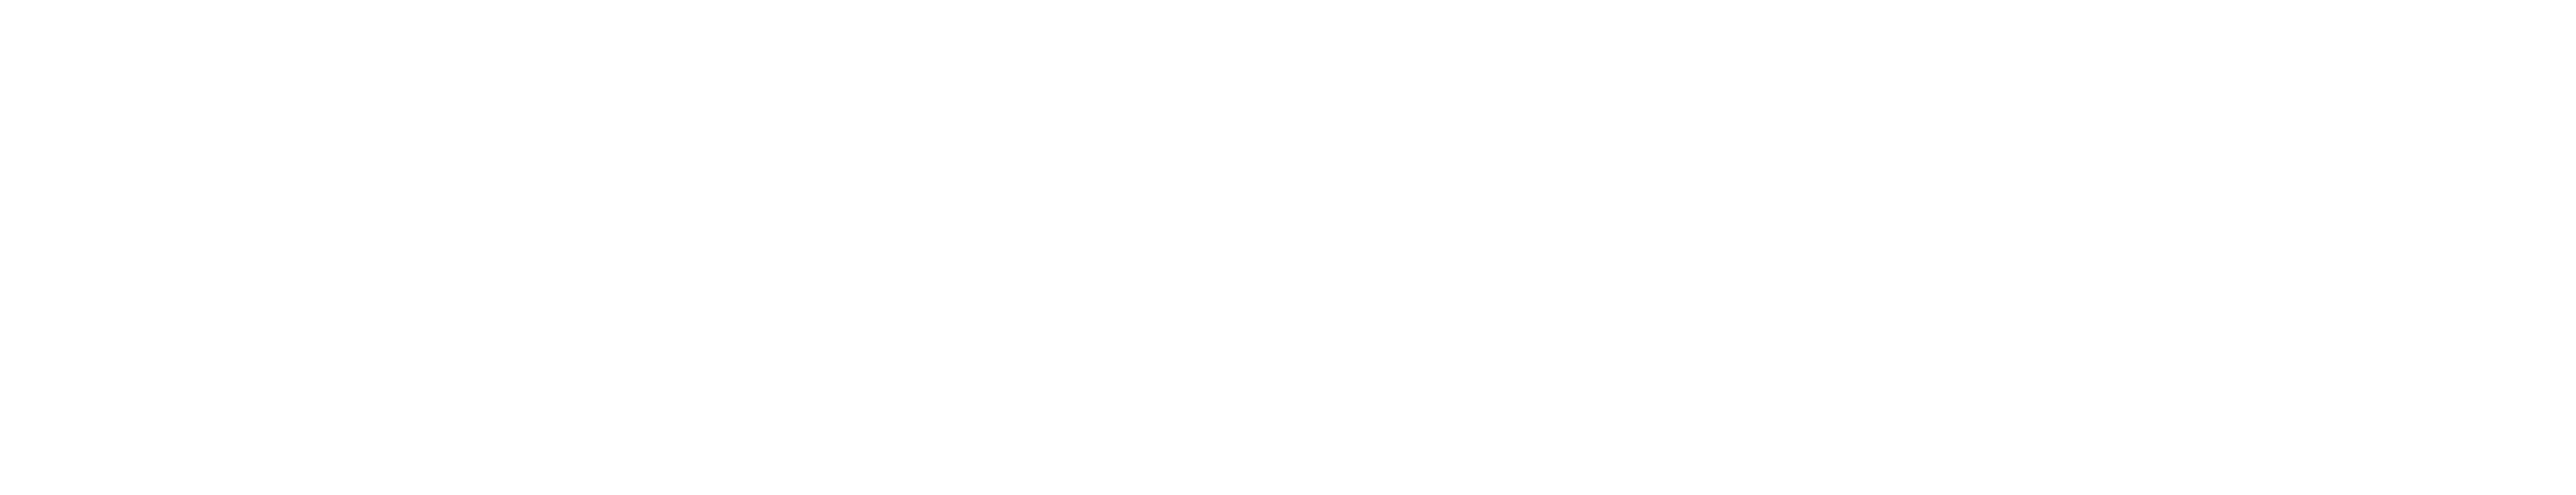 Spectora full logo white